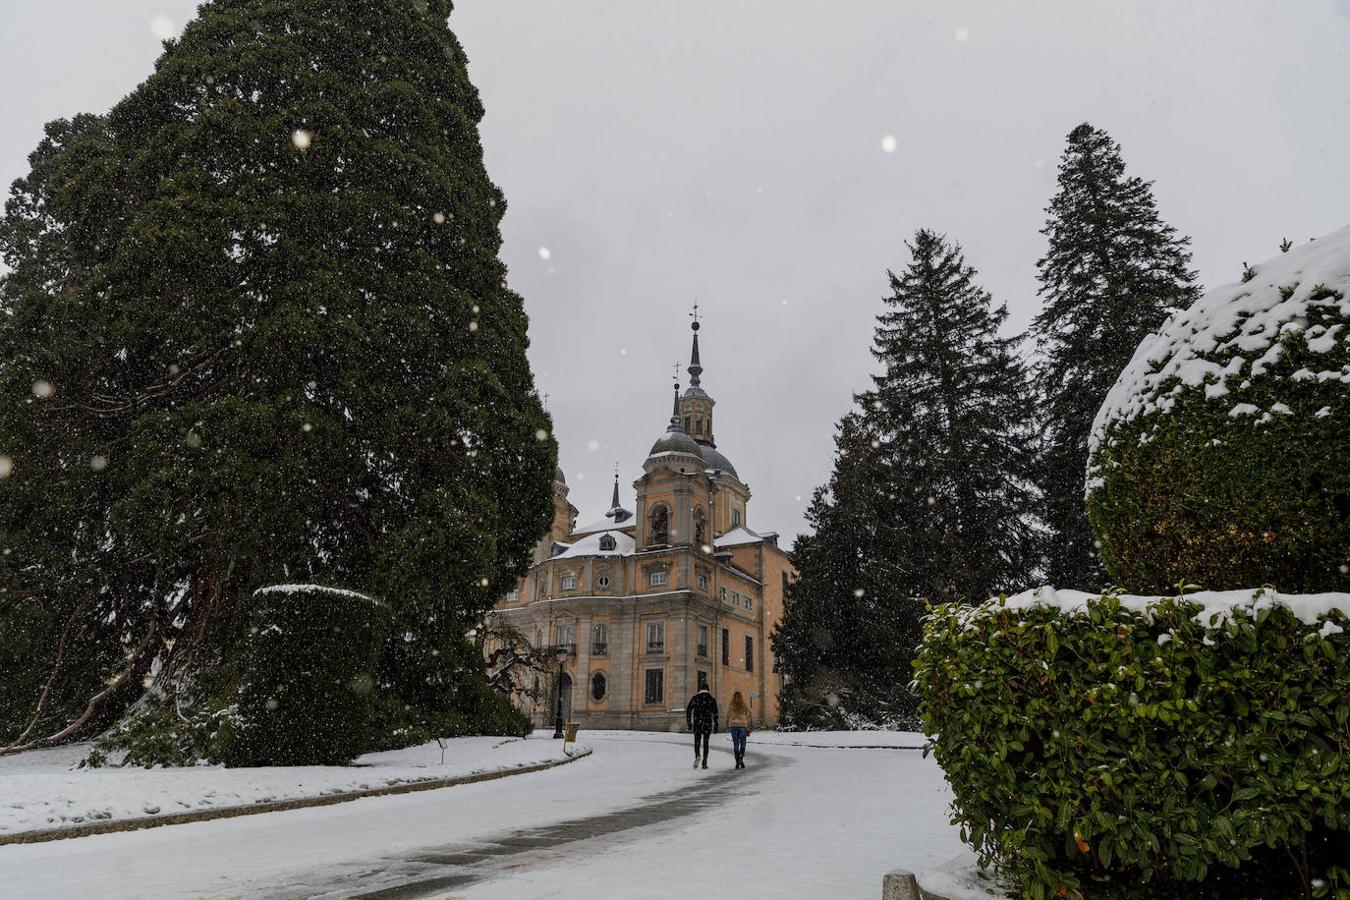 La Granja de San Ildefonso, en Segovia. El palacio real de la Granja de San Ildefonso en Segovia, nevado tras el paso de la borrasca Filomena, Castilla y León (España), a 8 de enero de 2020